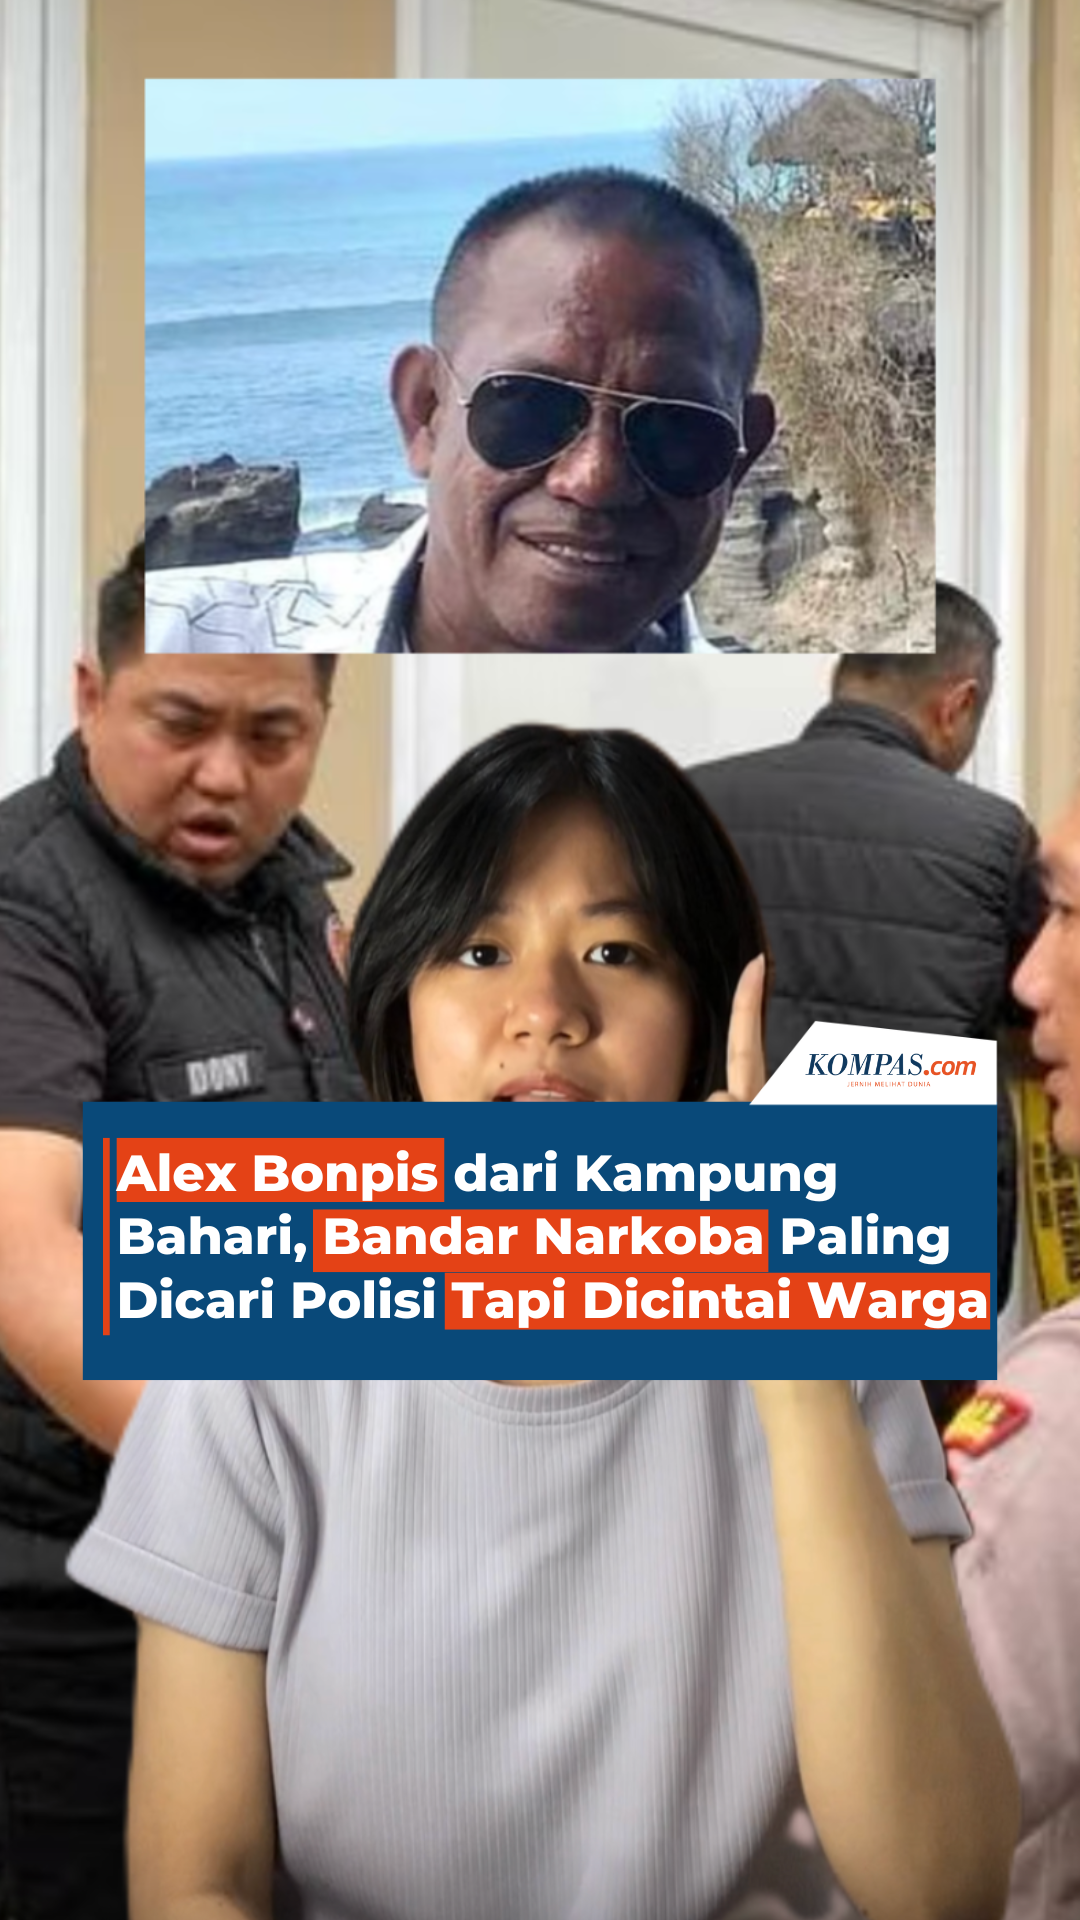 Alex Bonpis dari Kampung Bahari, Bandar Narkoba Paling Dicari Polisi Tapi Dicintai Warga